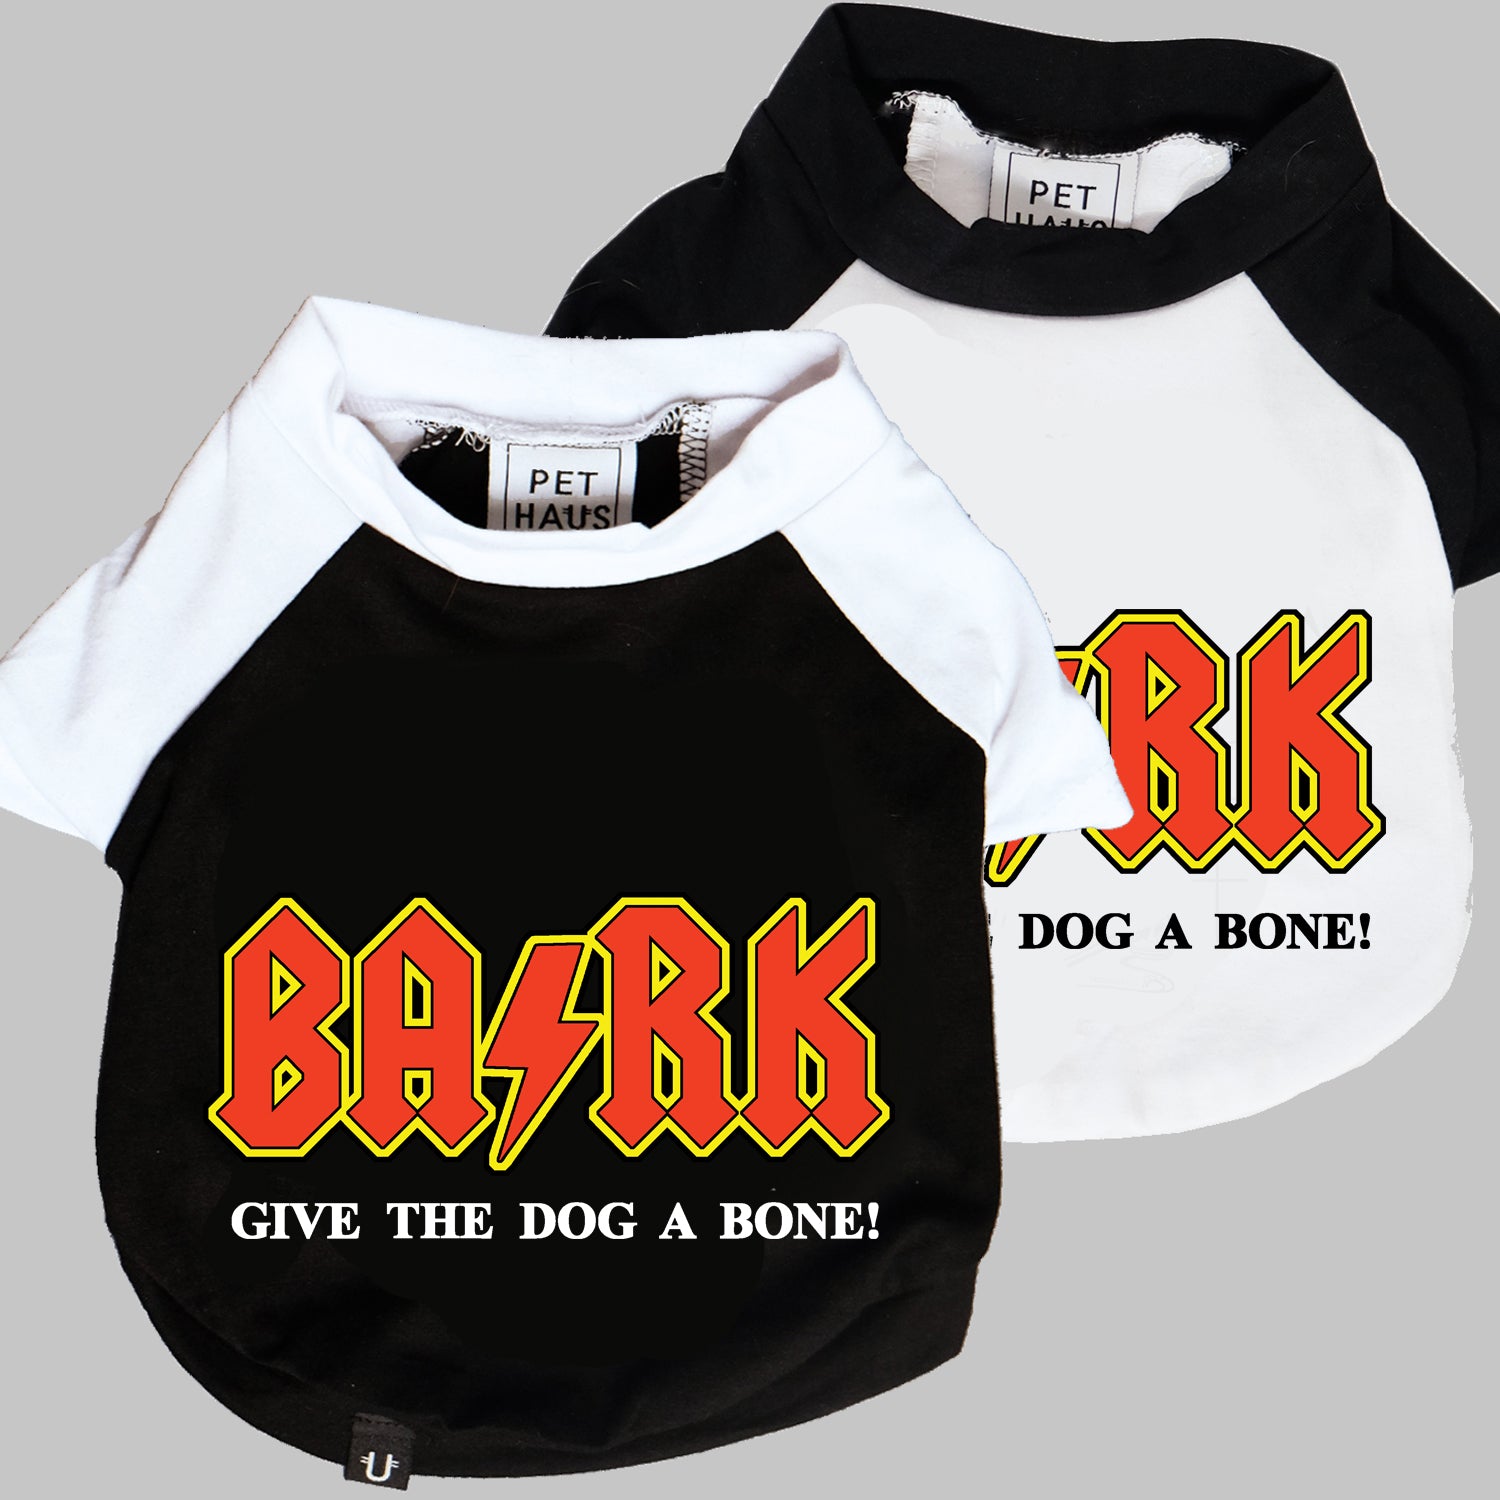 ACDC dog tee, rock dog tee, BARK dog tee, large dog tee designed in Australia